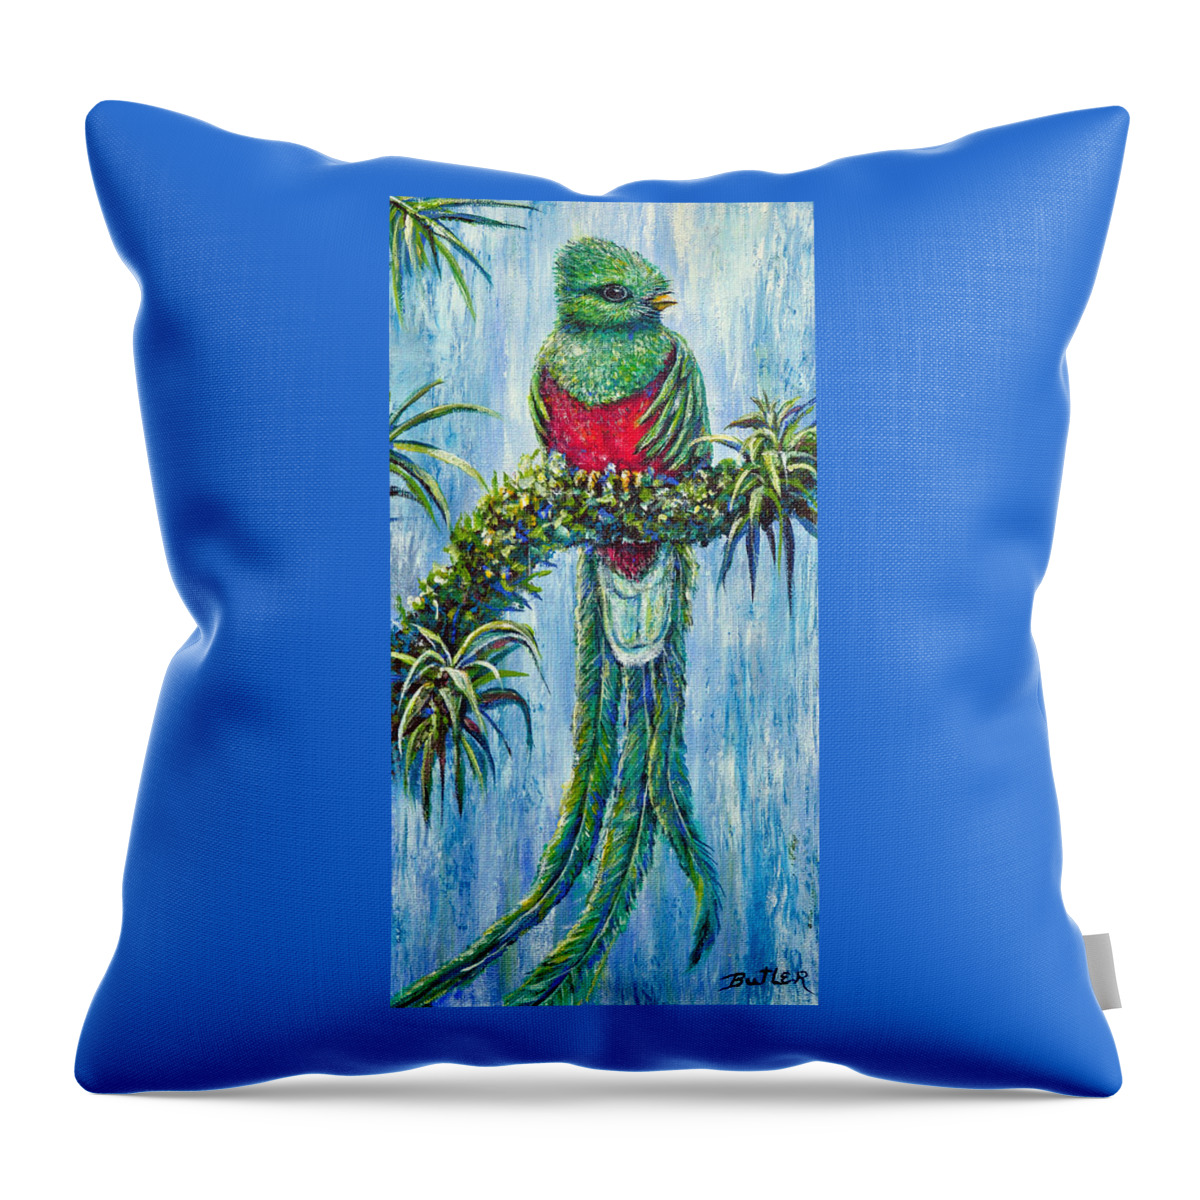 Nature Bird Quetzal Rainforest Throw Pillow featuring the painting Quetzal by Gail Butler